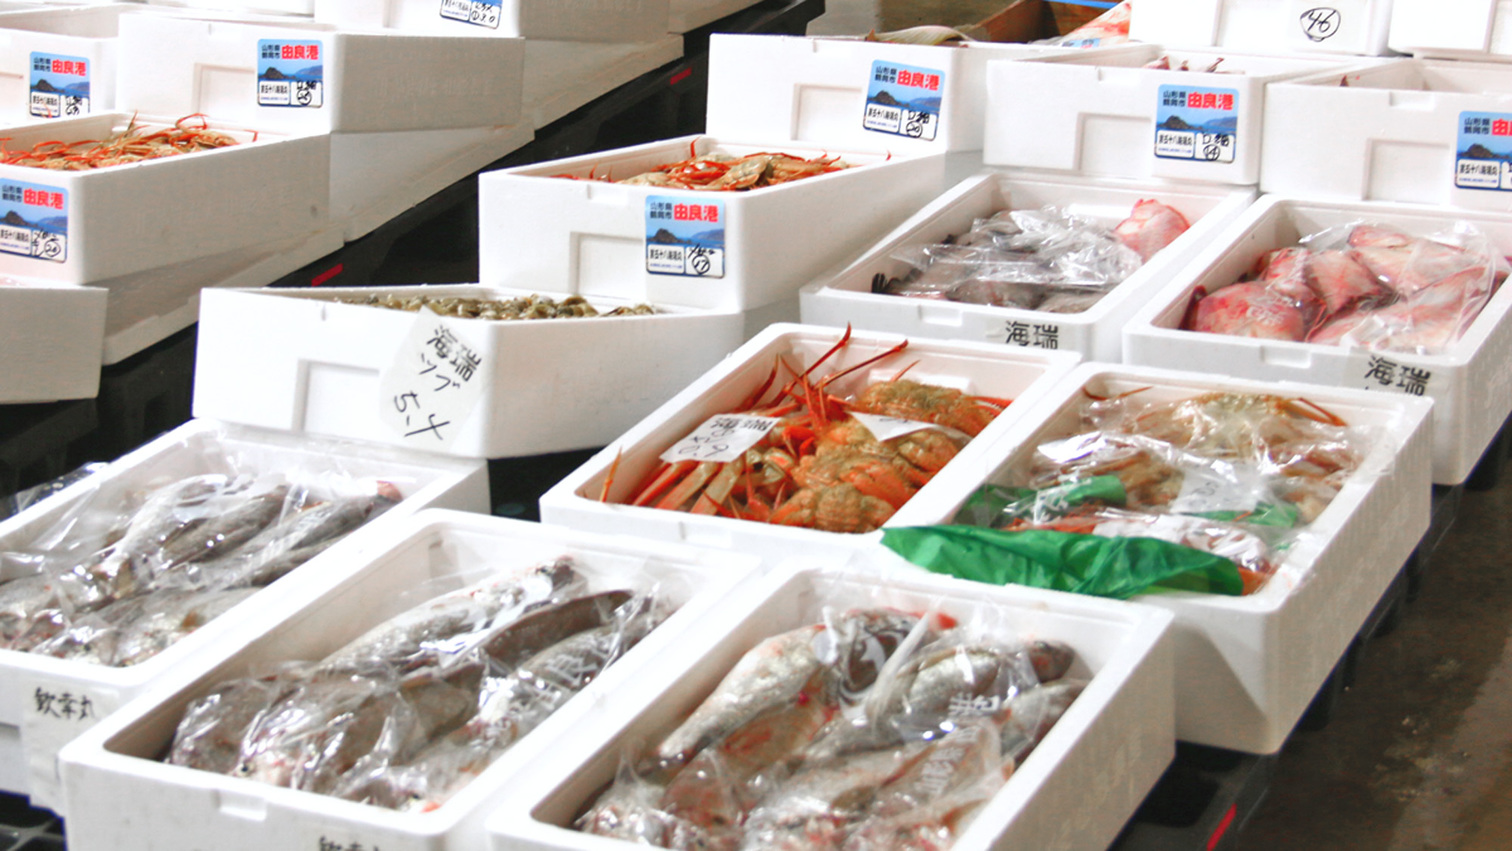 当館の魚介類は、由良漁港より直接仕入れているため活きの良い新鮮な海の幸をお楽しみいただけます。